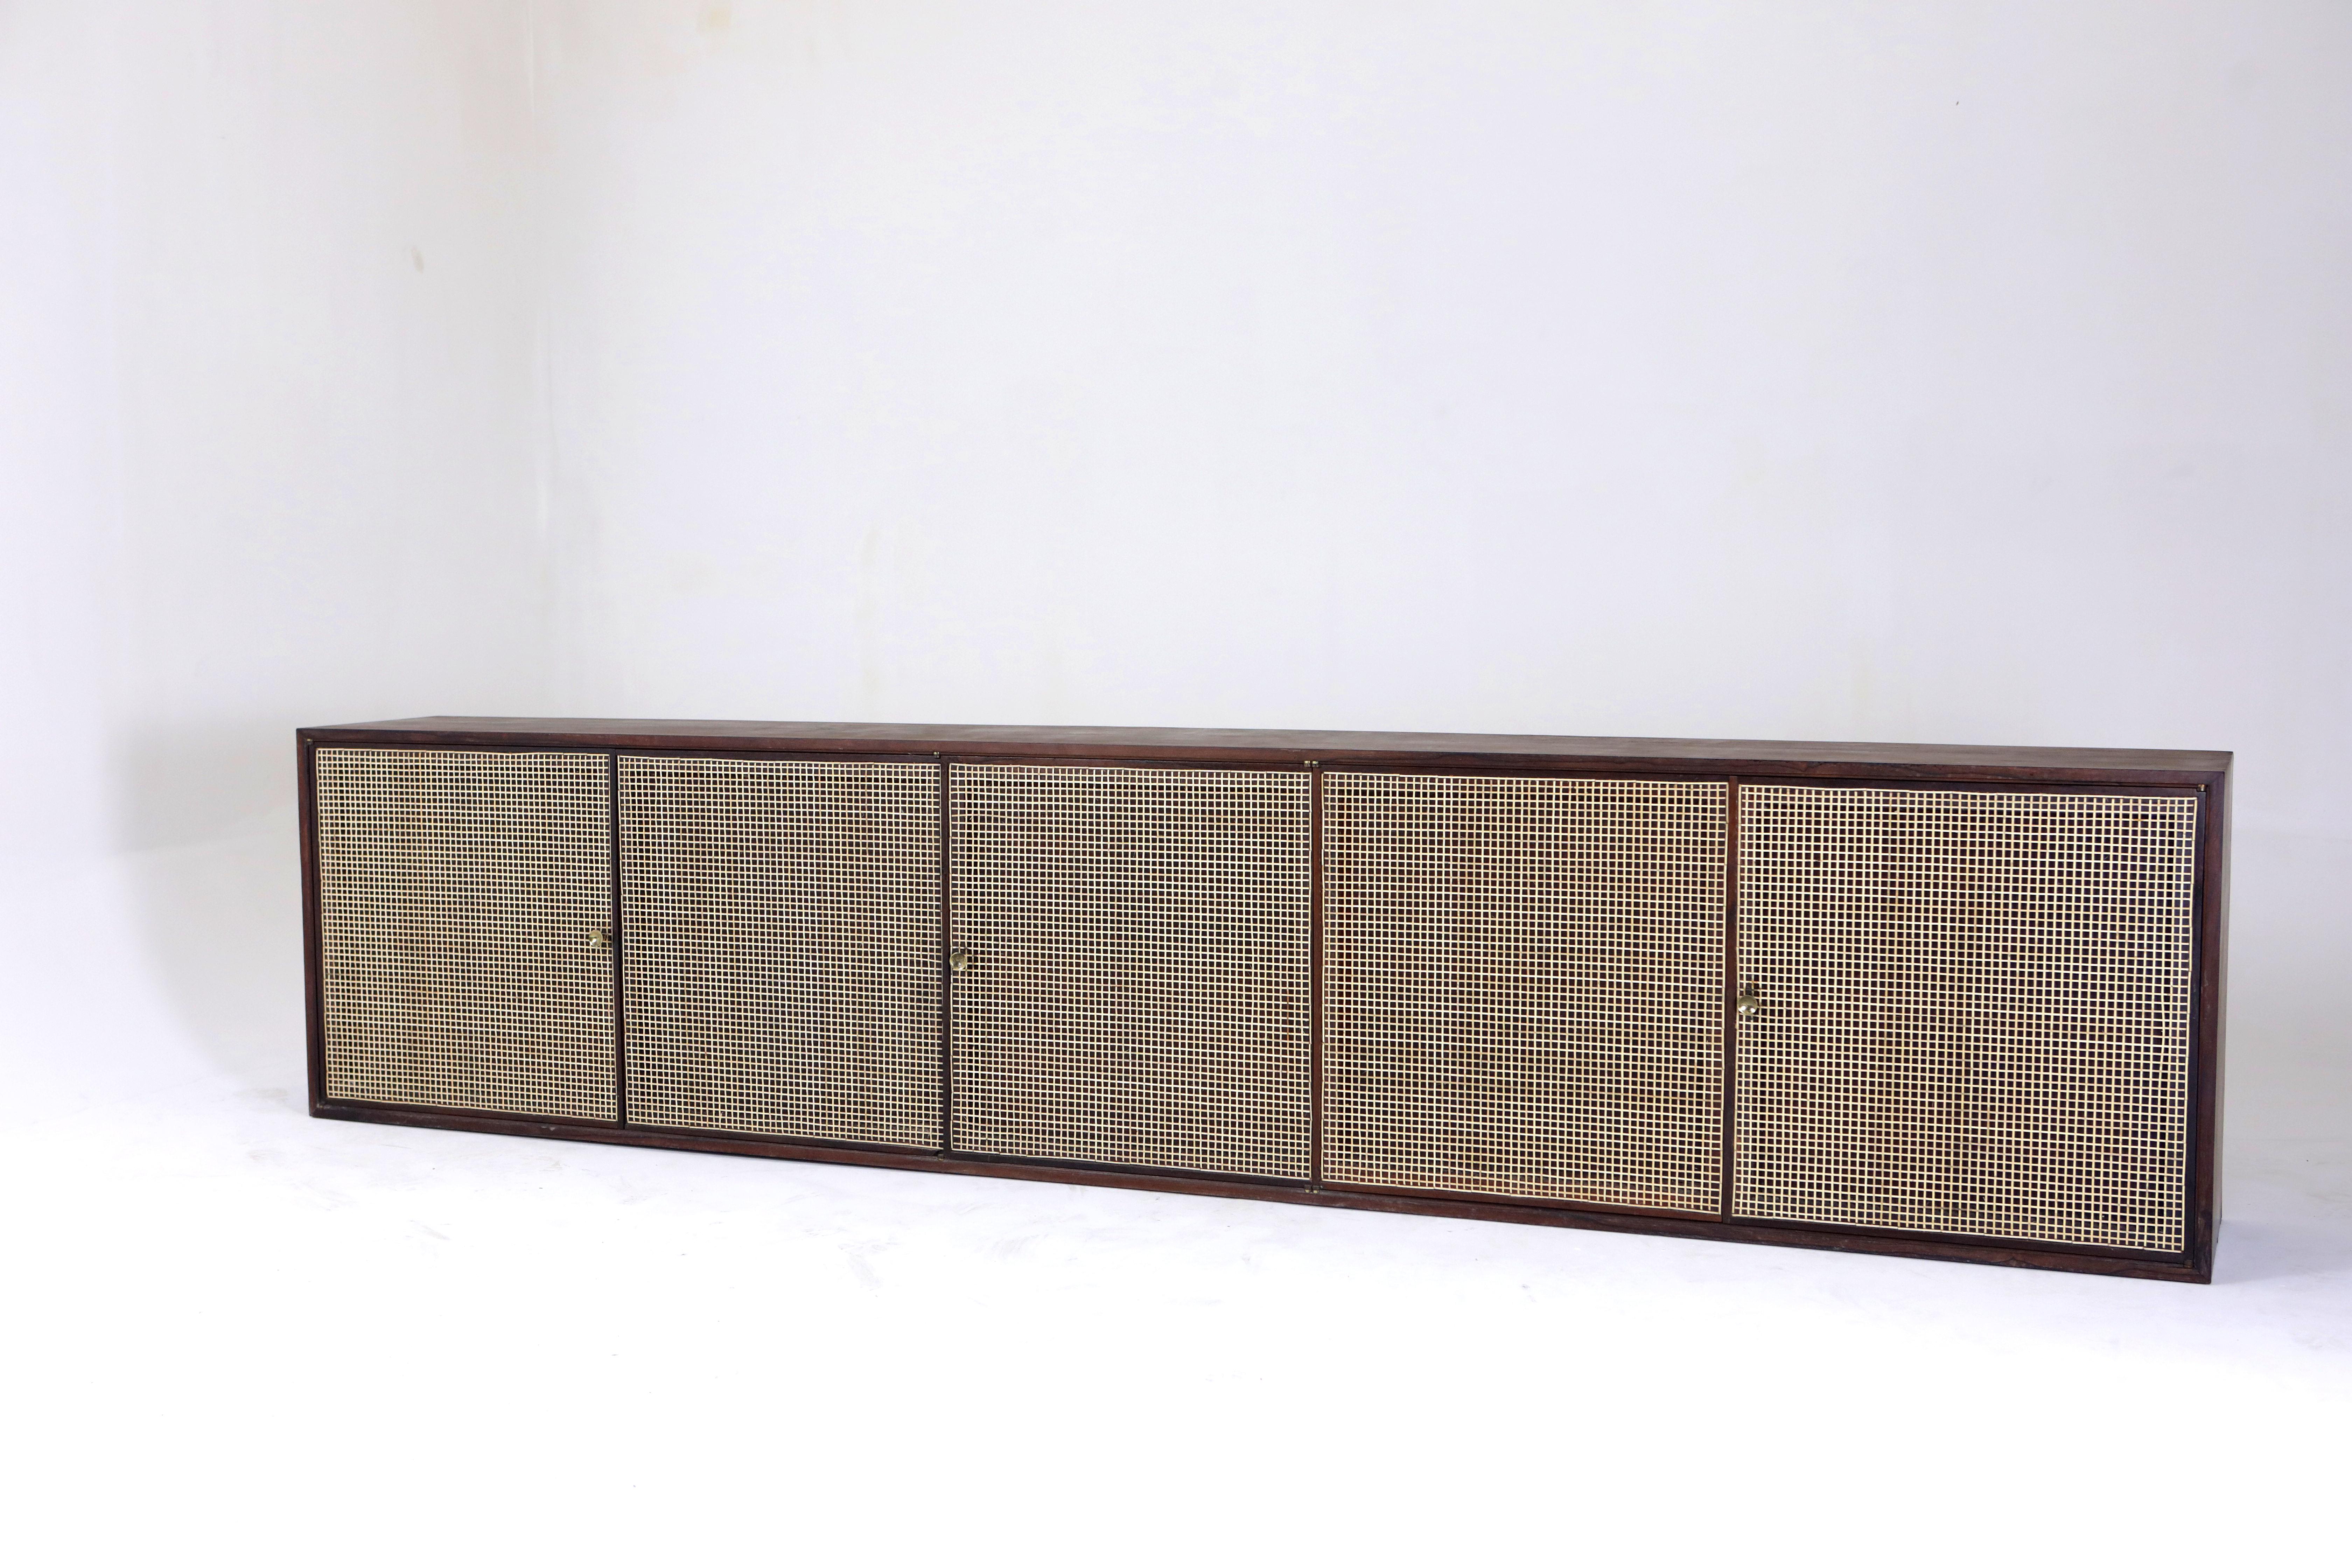 Modernes Wandschrank aus der Mitte des Jahrhunderts von Forma Manufacture, Brasilien, 1960er Jahre

Dieses Wandbuffet von Forma Manufacture ist aus Holz gefertigt und mit einer natürlichen Lackierung versehen, die die organischen Strukturen und Töne